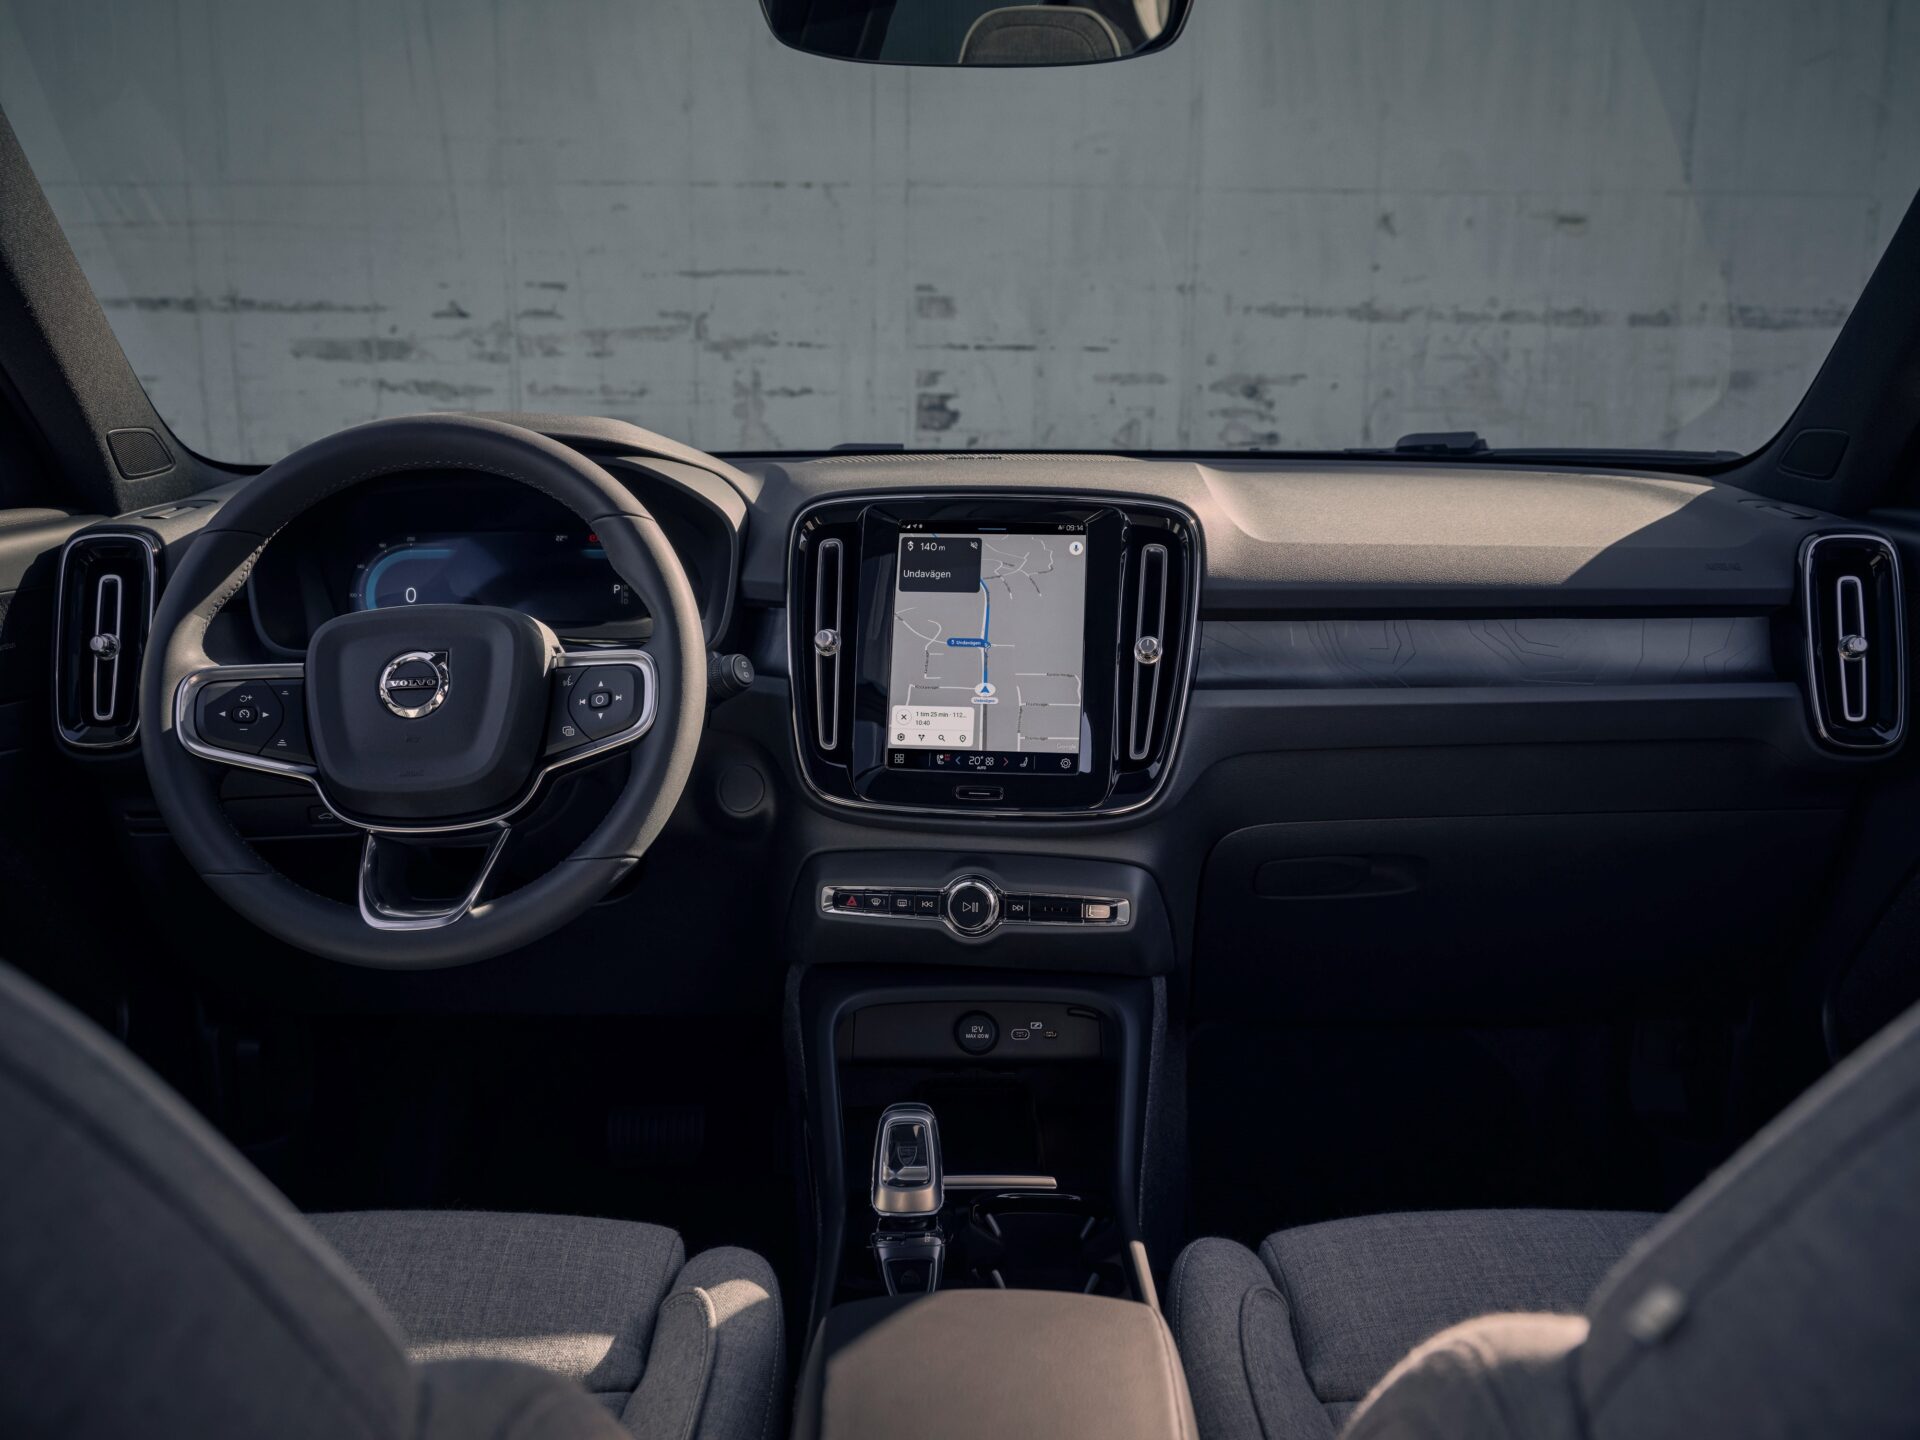 La Volvo XC40 Son design intérieur est à la fois minimaliste et sophistiqué, avec des matériaux durables et des finitions haut de gamme. De plus, elle intègre des technologies avancées telles que le système Google Assistant et un écran tactile de 9 pouces, pour une connectivité fluide.